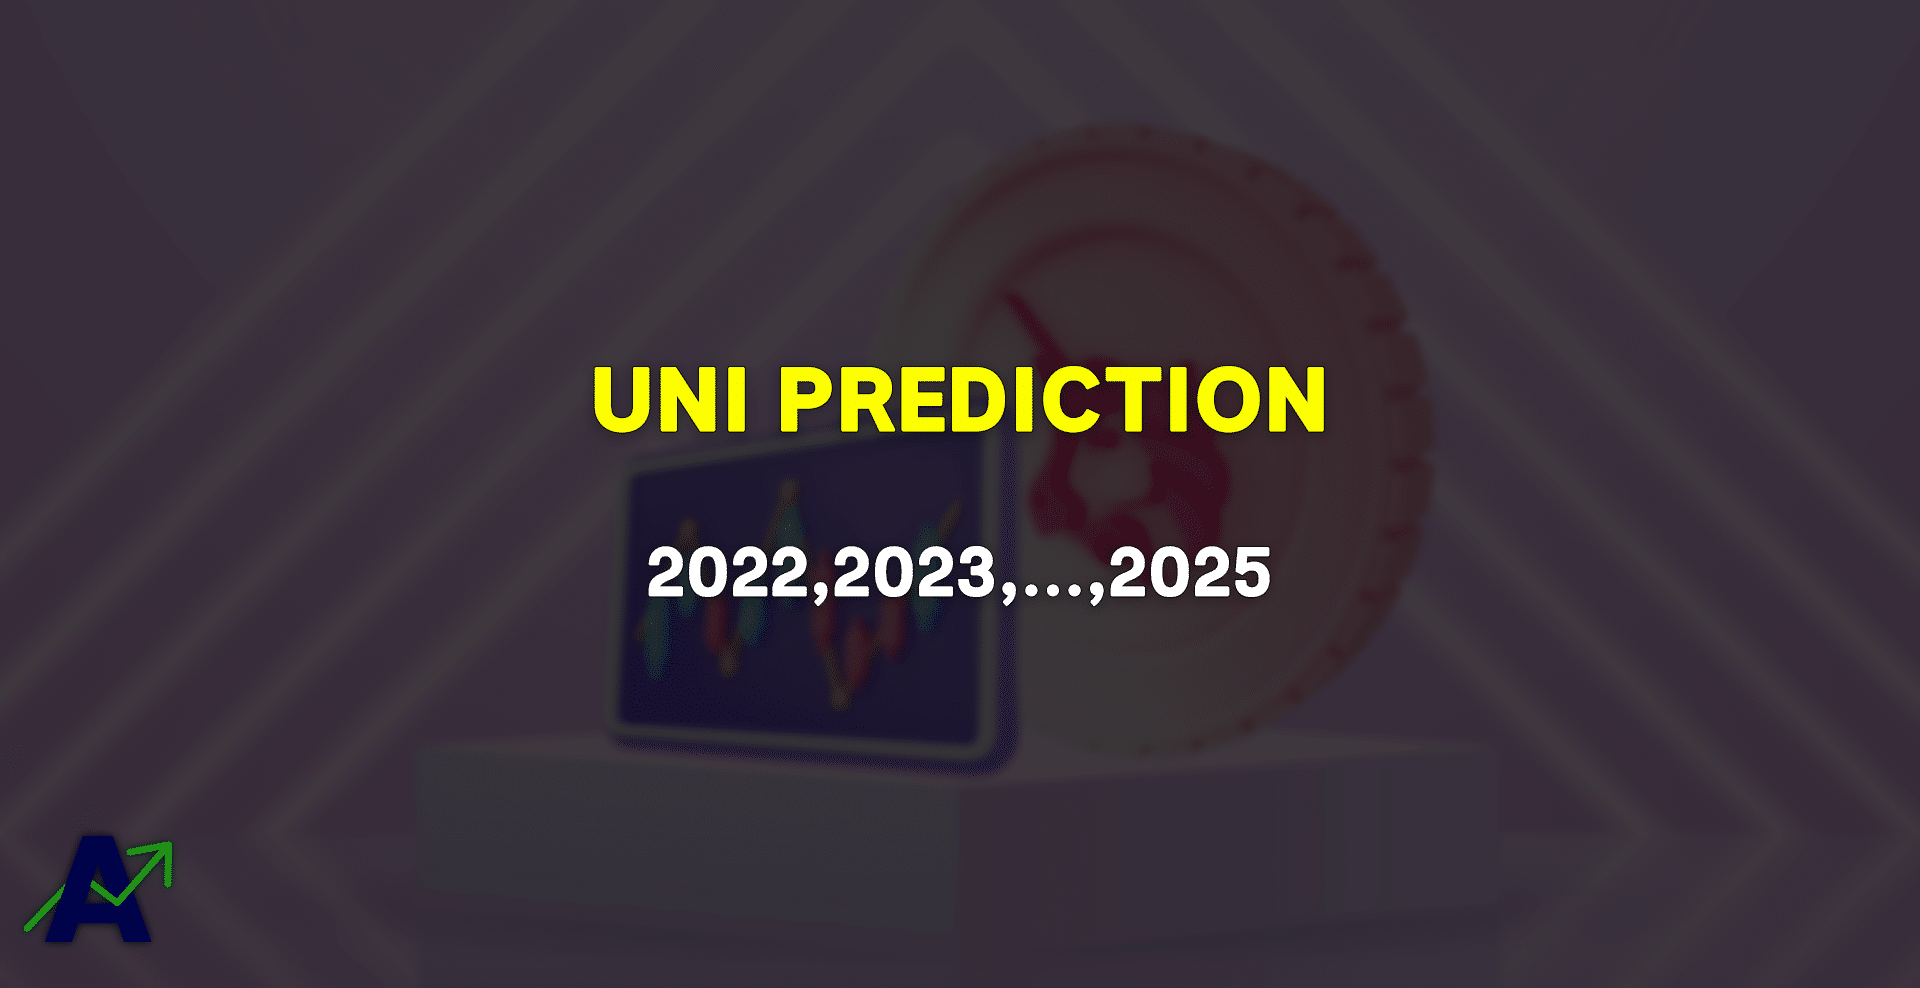 UNI price prediction for 2022, 2023, 2024 & 2025